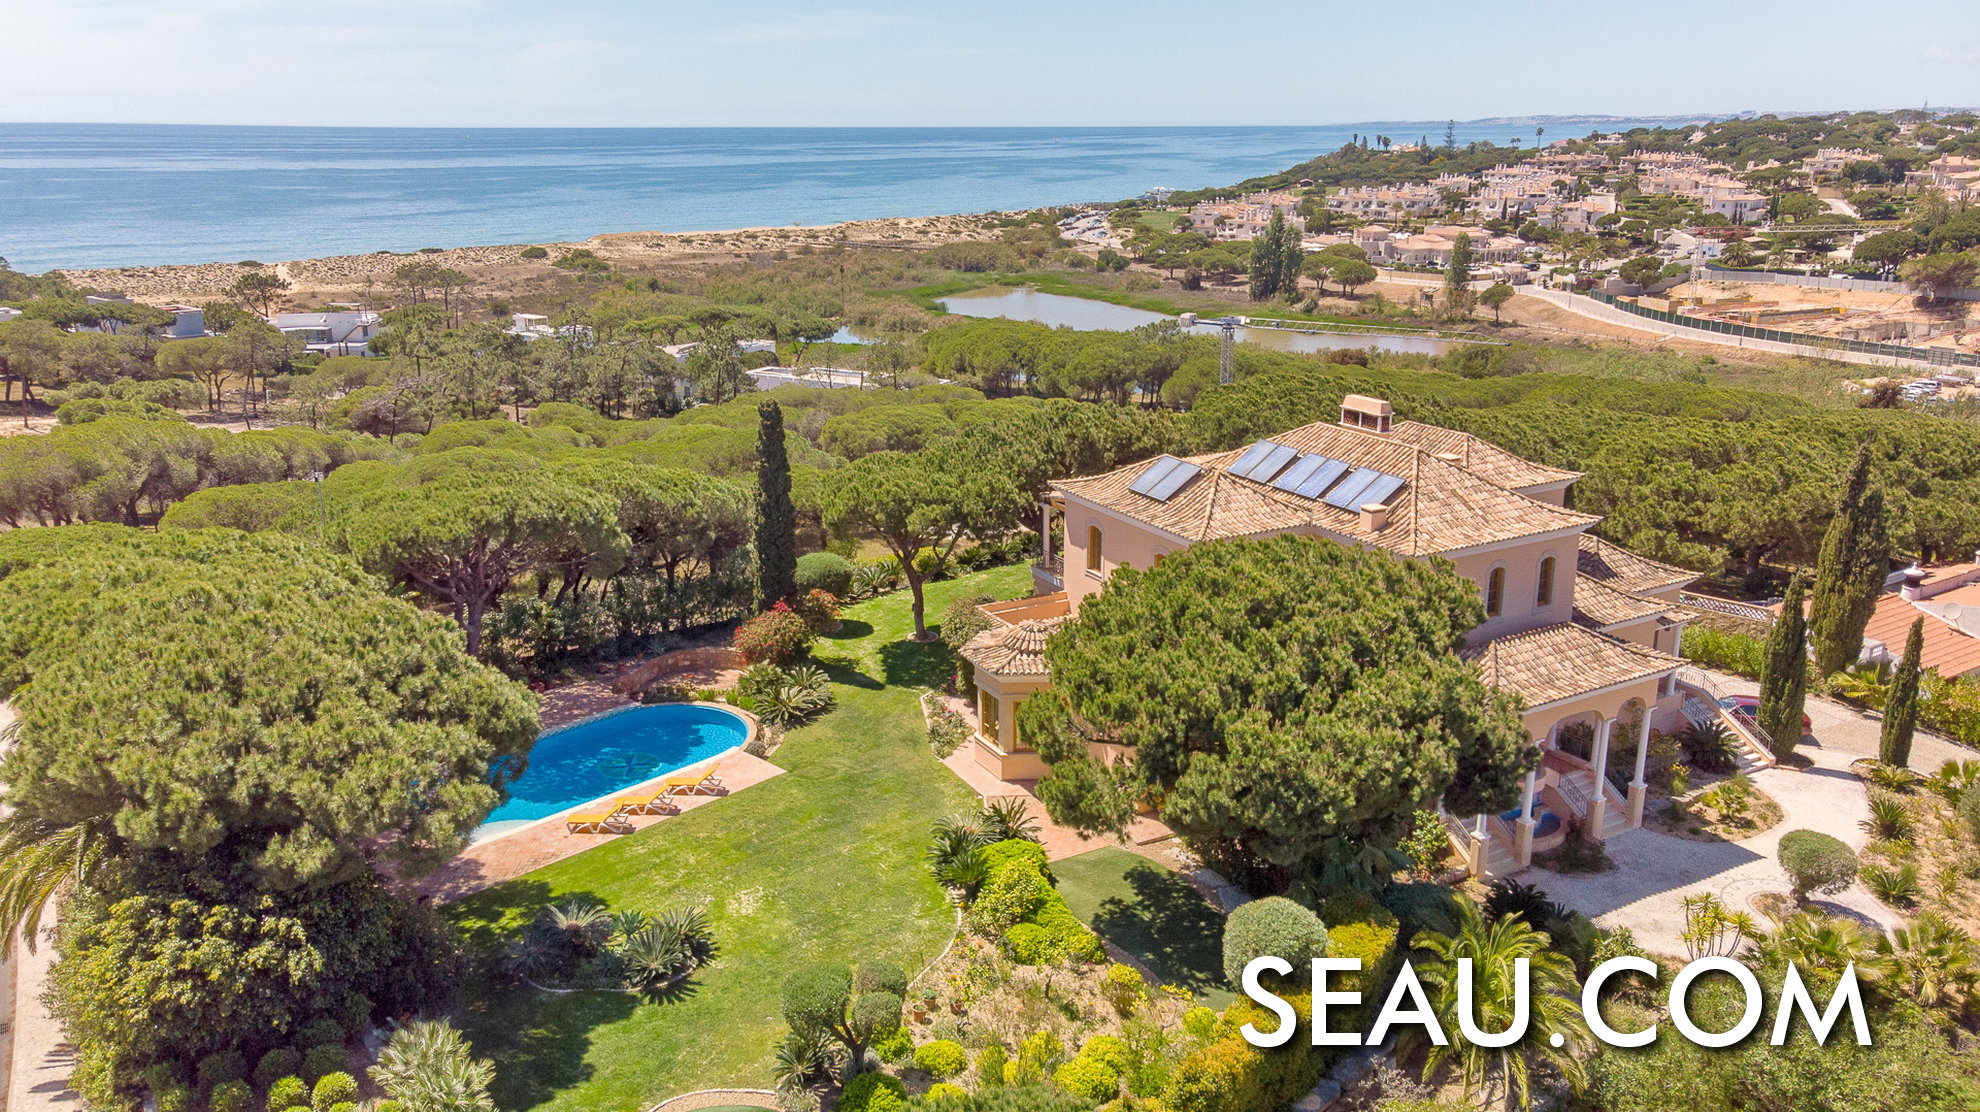 Spectaculaire locatie om in Portugal te wonen, een villa met uitzicht op zee, midden in de natuur in de badplaats Vale do Lobo, Algarve